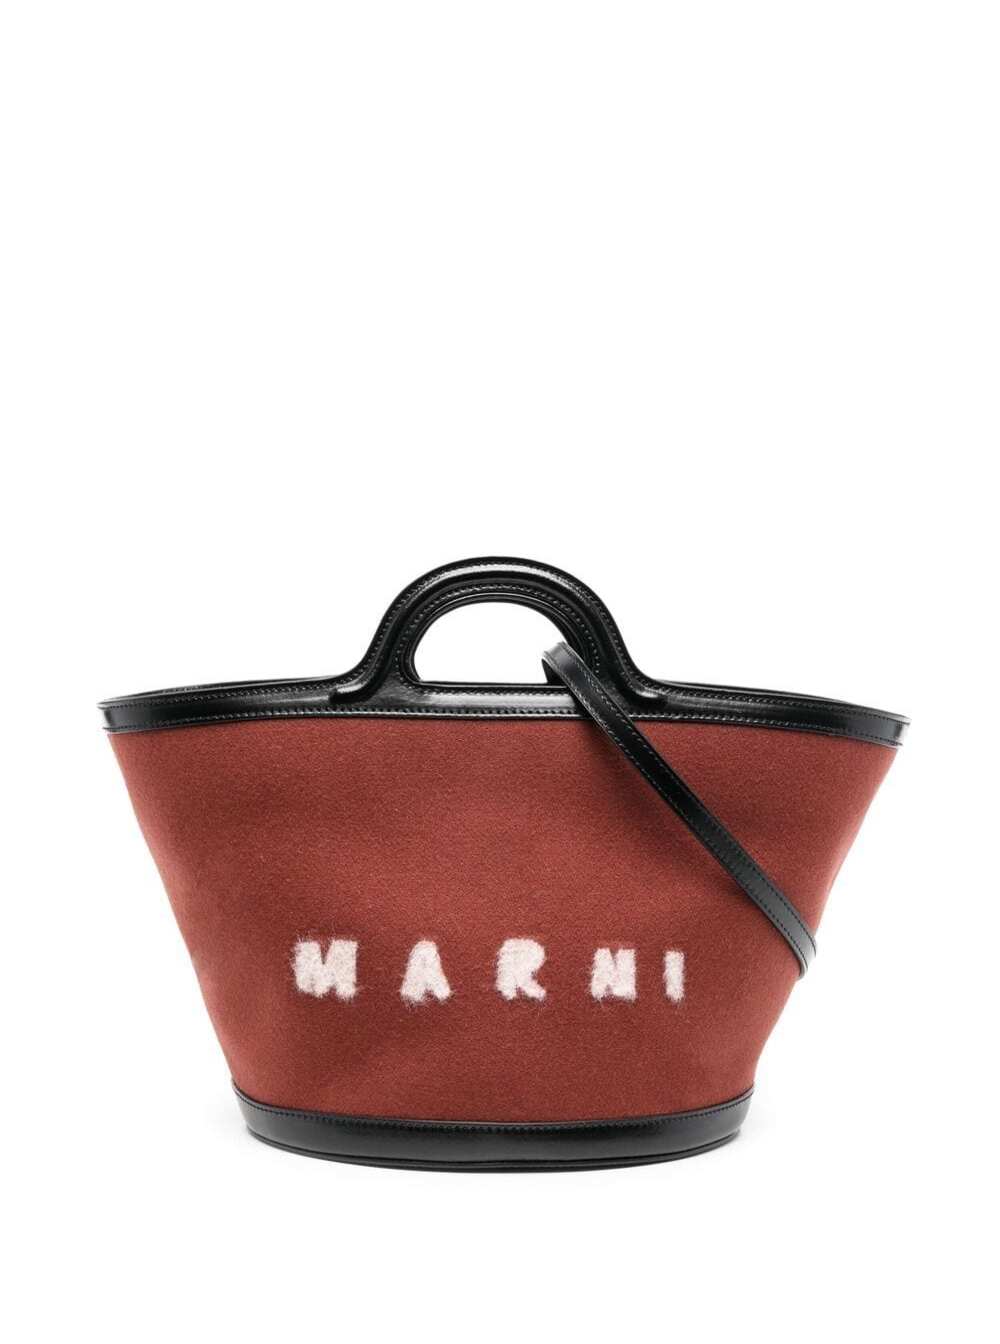 Tropicalia Wool And Leather Handbag With Logo Marni Woman